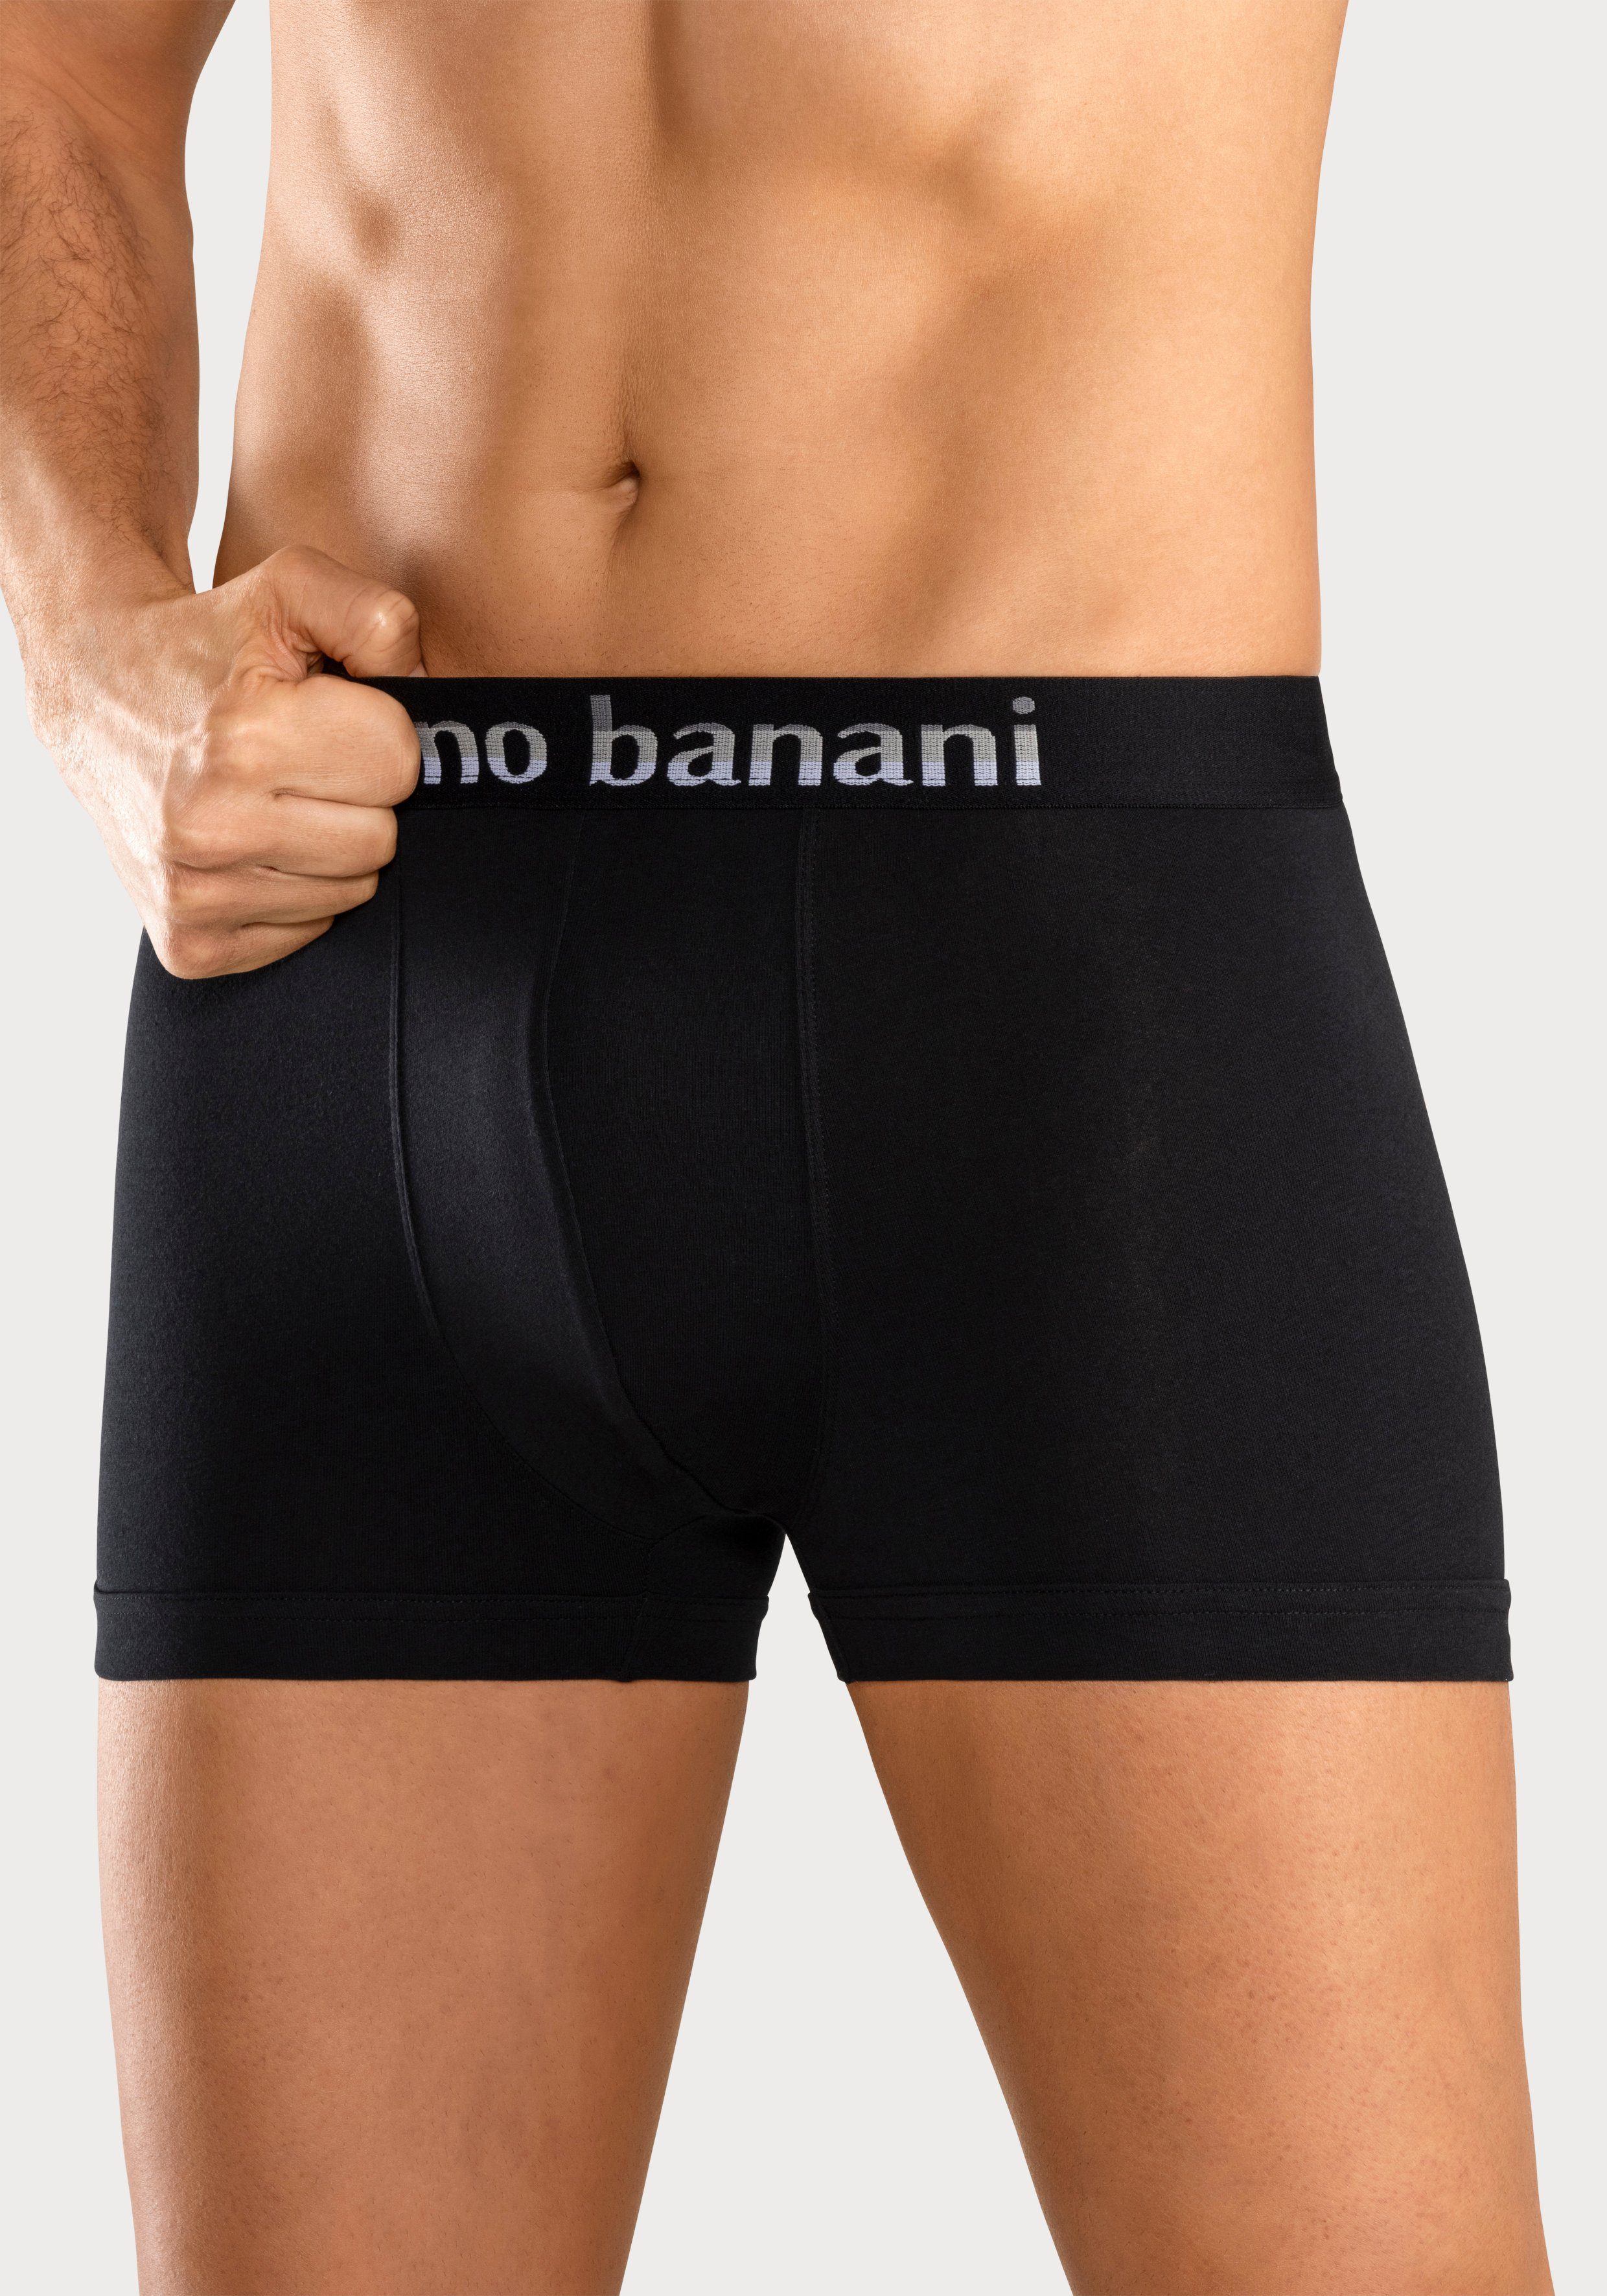 Bruno Banani Boxer (Packung, 5-St) schwarz-grau Streifen schwarz-mint, schwarz-pink, schwarz-blau, mit Logo Webbund schwarz-gelb